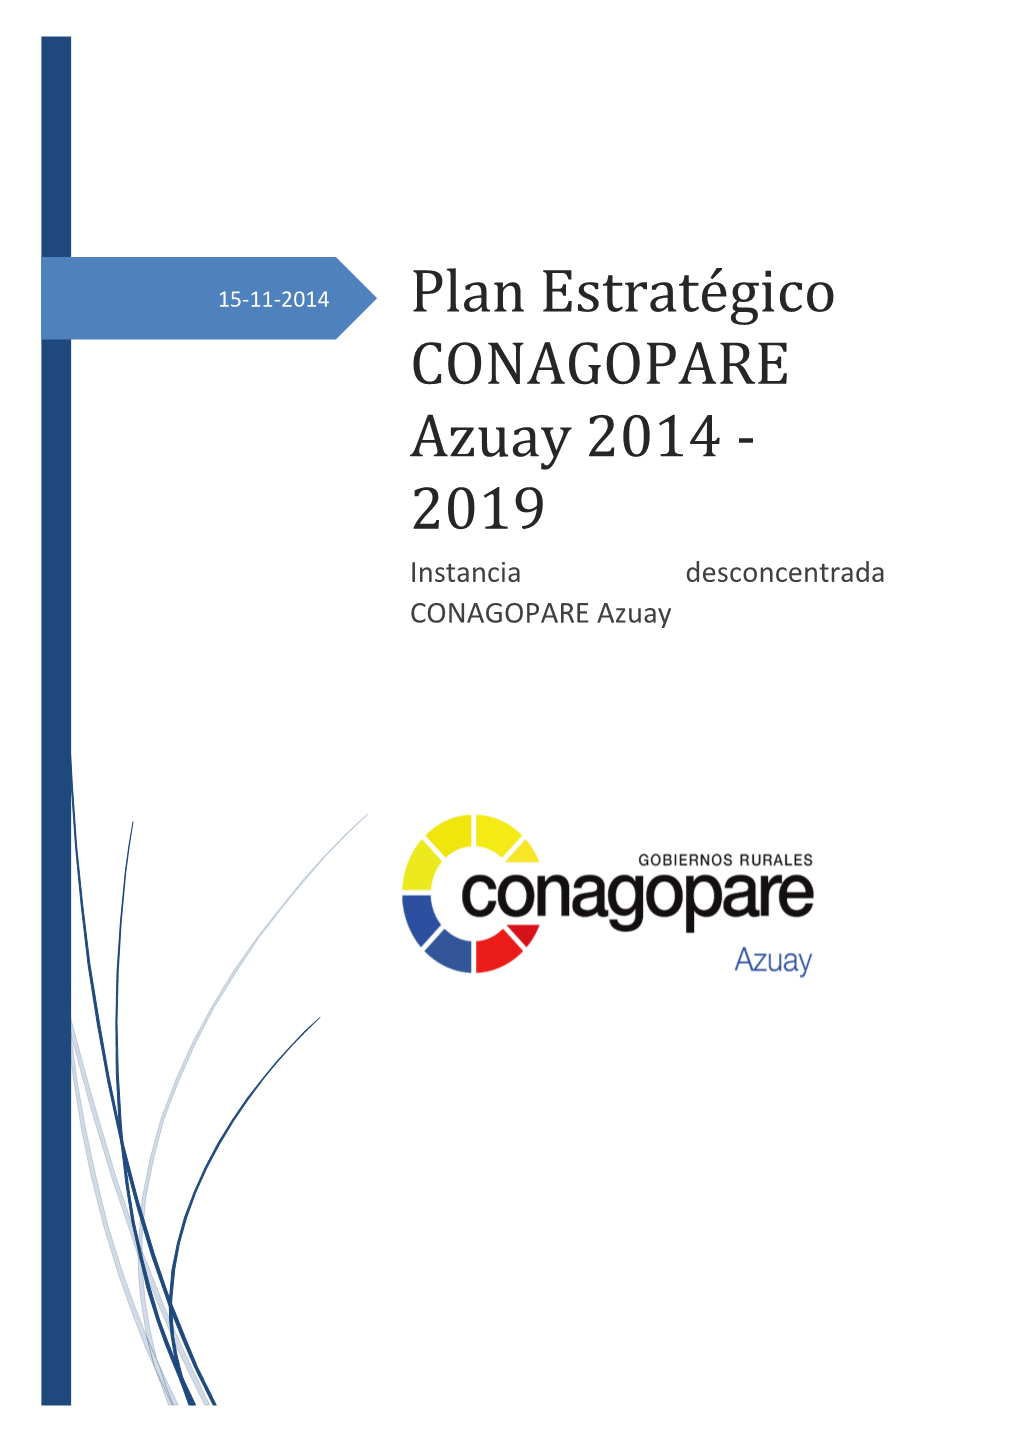 Plan Estratégico CONAGOPARE Azuay 2014 - 2019 Instancia Desconcentrada CONAGOPARE Azuay PLAN ESTRATÉGICO CONAGOPARE AZUAY 2014 - 2019